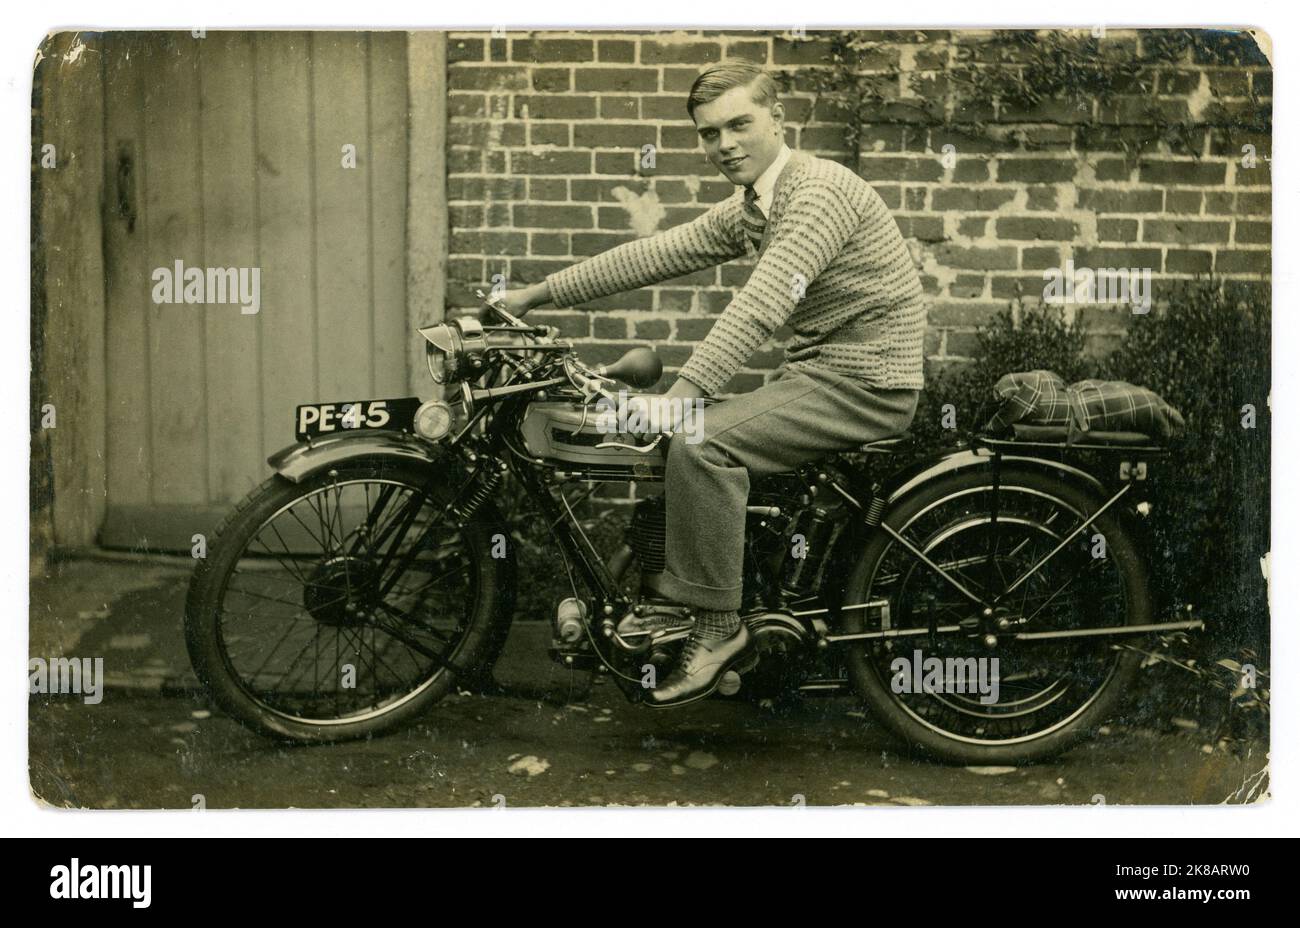 Original de la era de 1920 de feliz orgulloso joven o adolescente tardío, sentado a un paso de lo que parece una nueva motocicleta Triumph, Guildford registration, Surrey, Inglaterra, Reino Unido Foto de stock